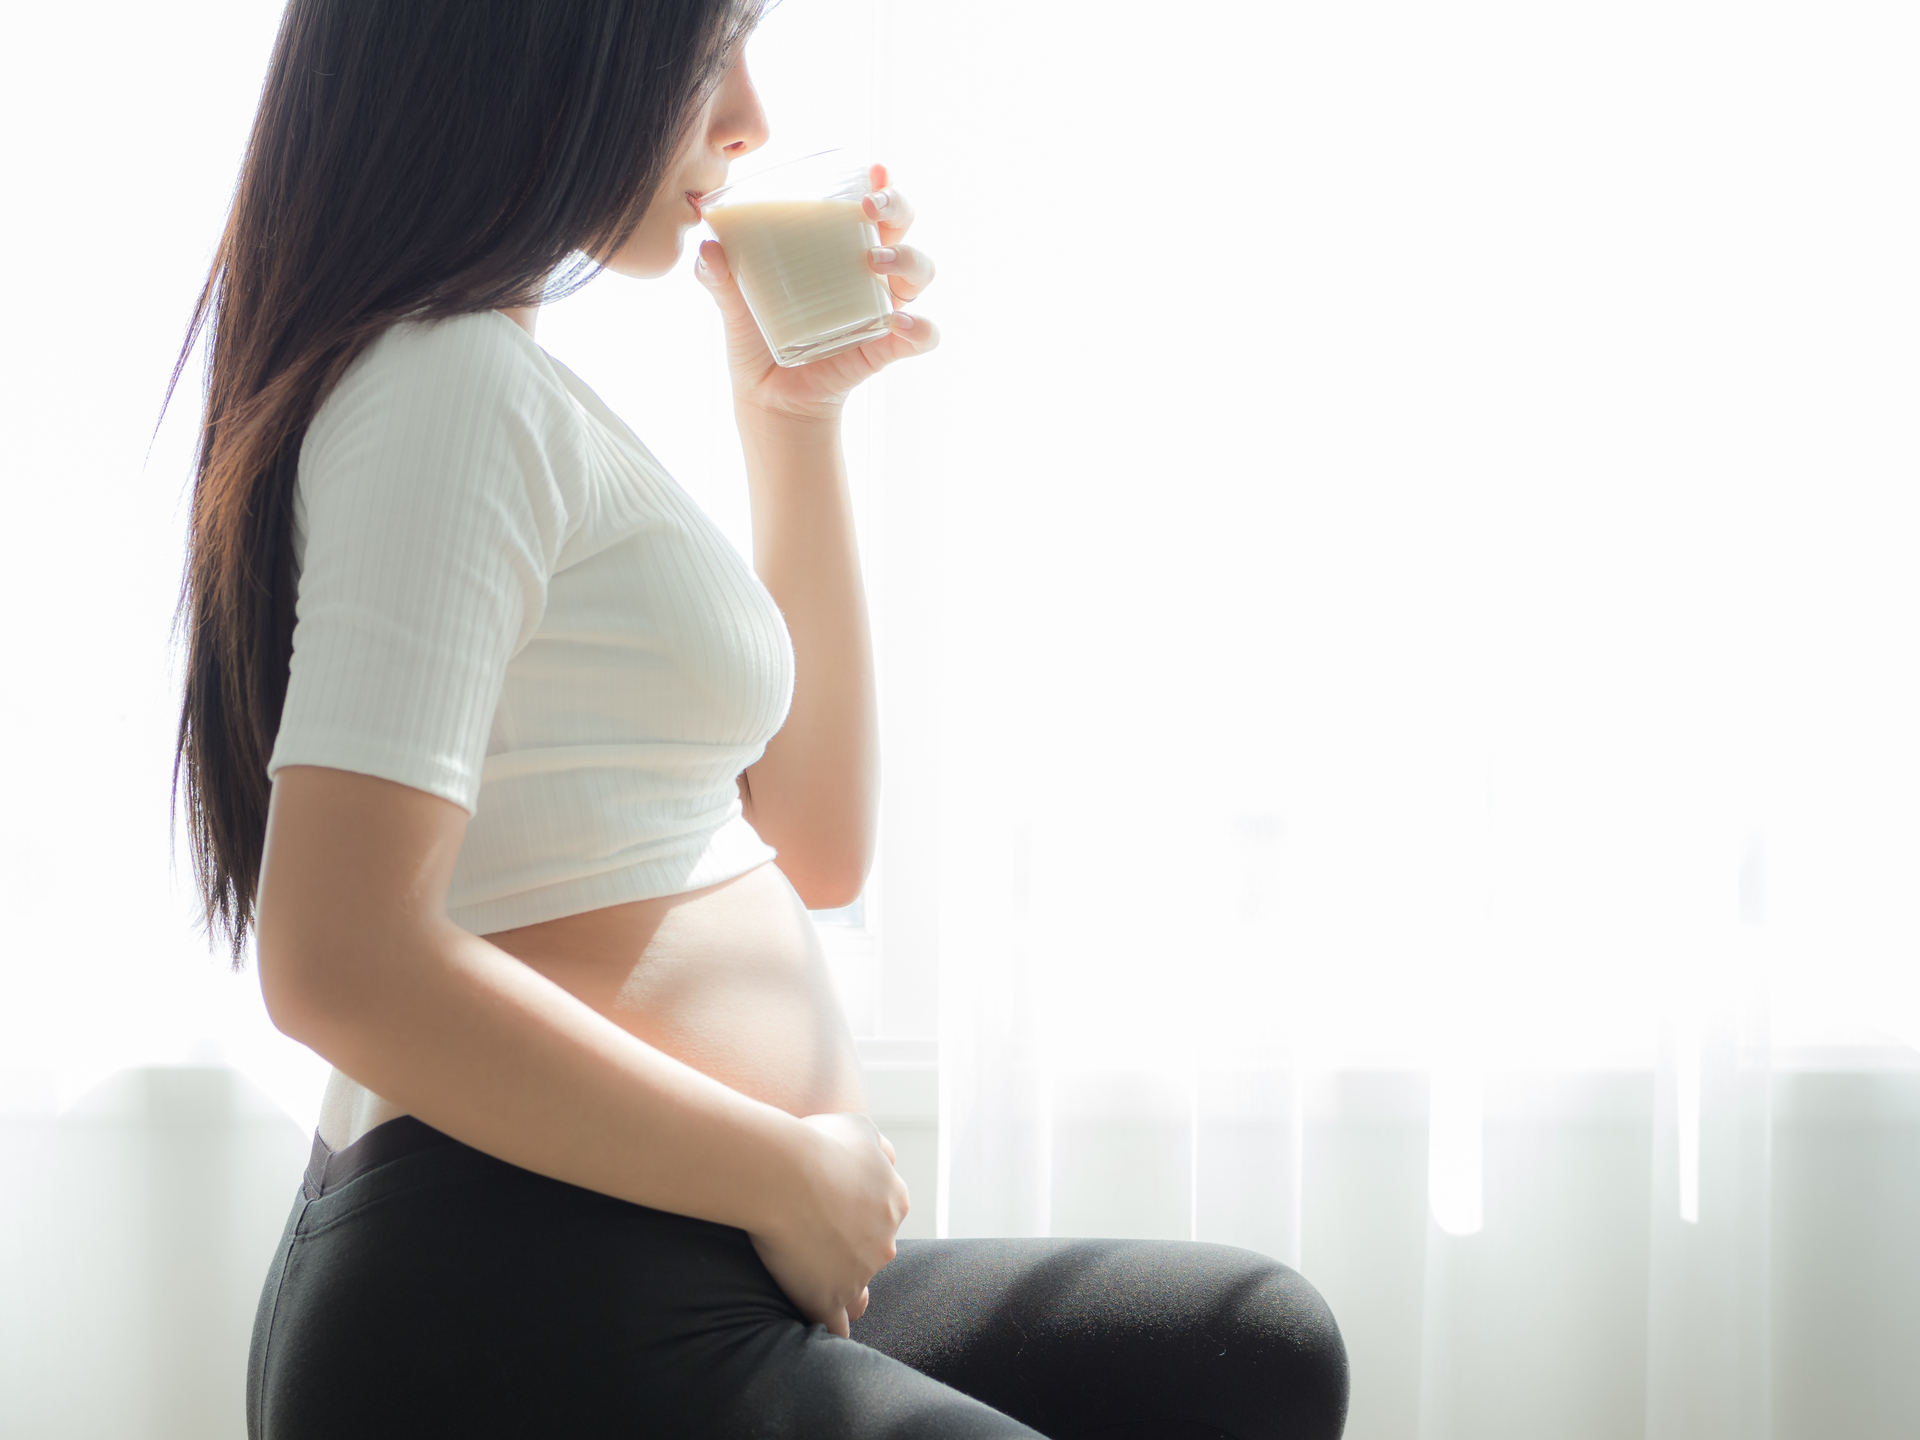 Na tym obrazku widzimy kobietę w 7. tygodniu ciąży, delikatnie trzymającą filiżankę z aromatyczną kawą. Jej spokojne spojrzenie i uśmiech świadczą o chwili relaksu i cieszeniu się tym małym przyjemnością w trakcie ciąży. Pomimo pewnych ograniczeń żywieniowych, od czasu do czasu delektowanie się ulubionymi napojami może przynieść chwilę ukojenia i radości w tym pięknym okresie oczekiwania na dziecko